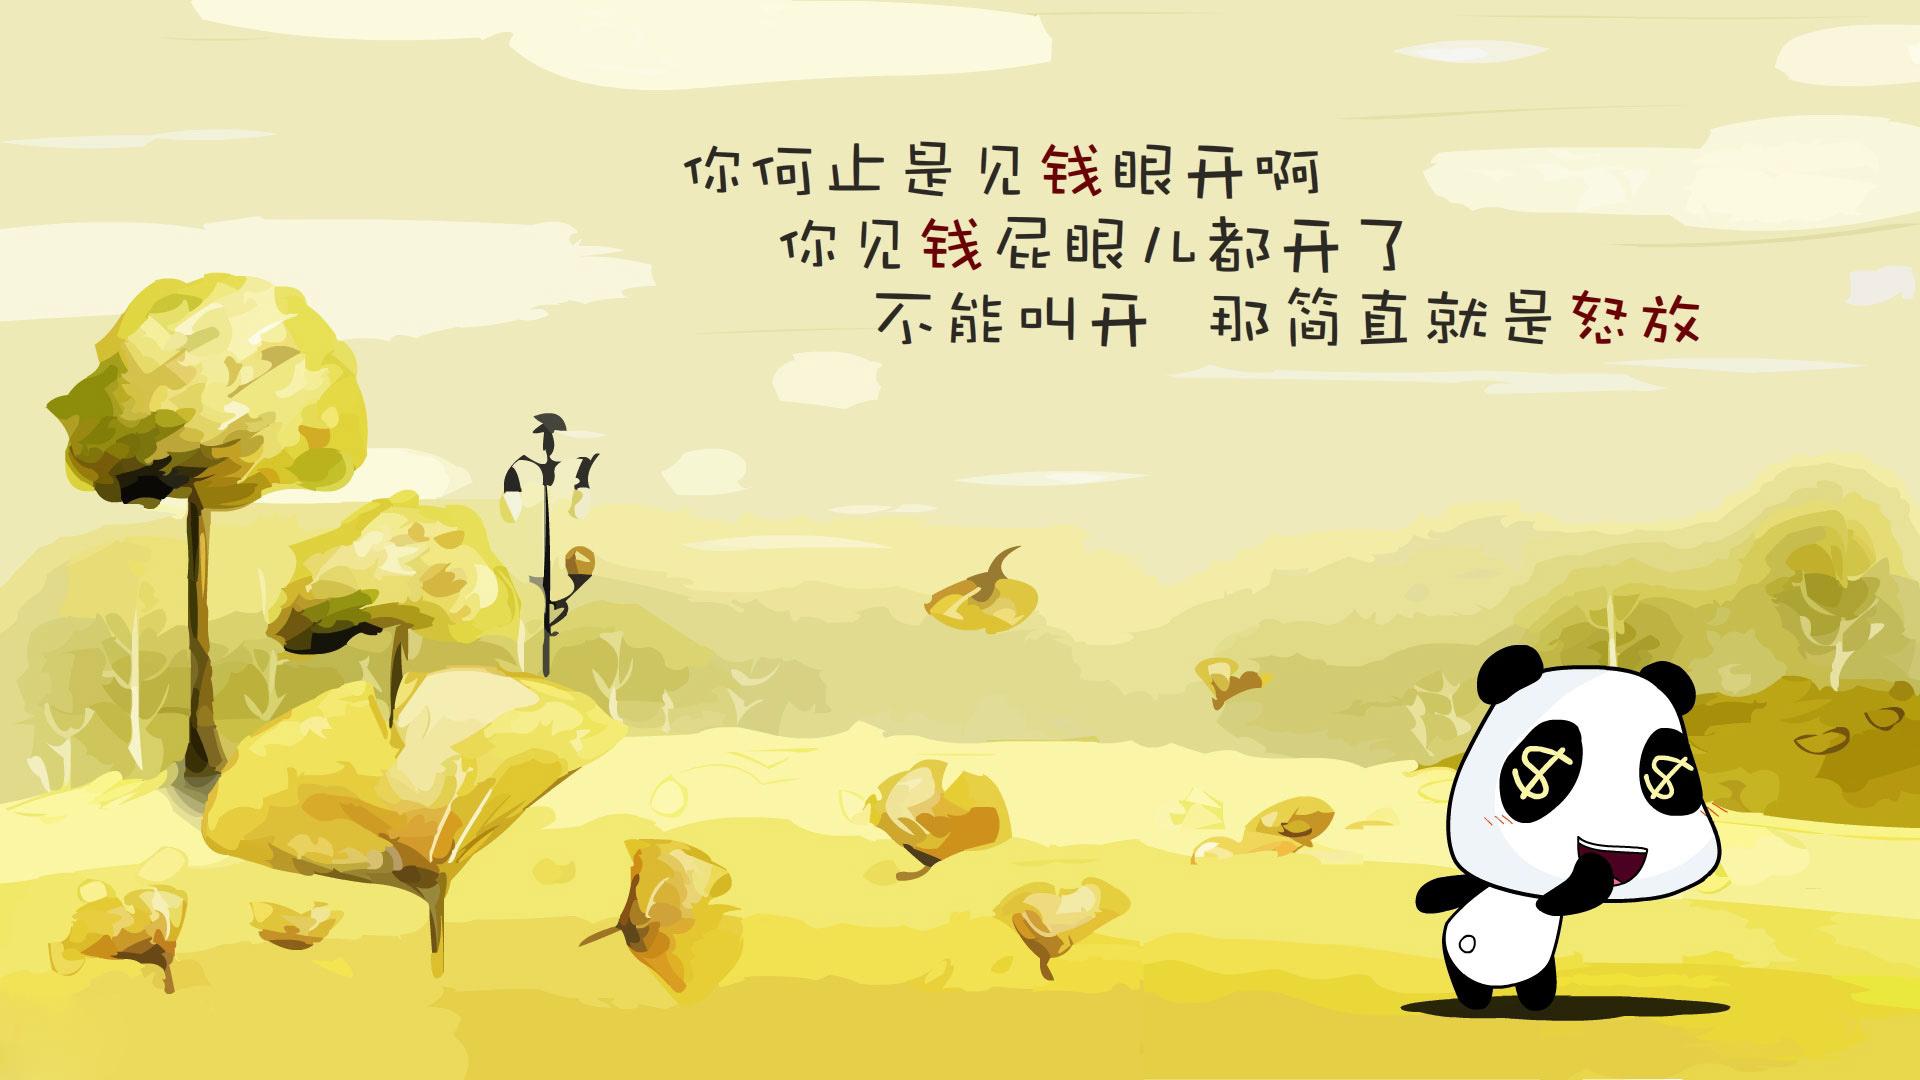 卡通熊猫系列经典俏皮幽默简短句子文字语录